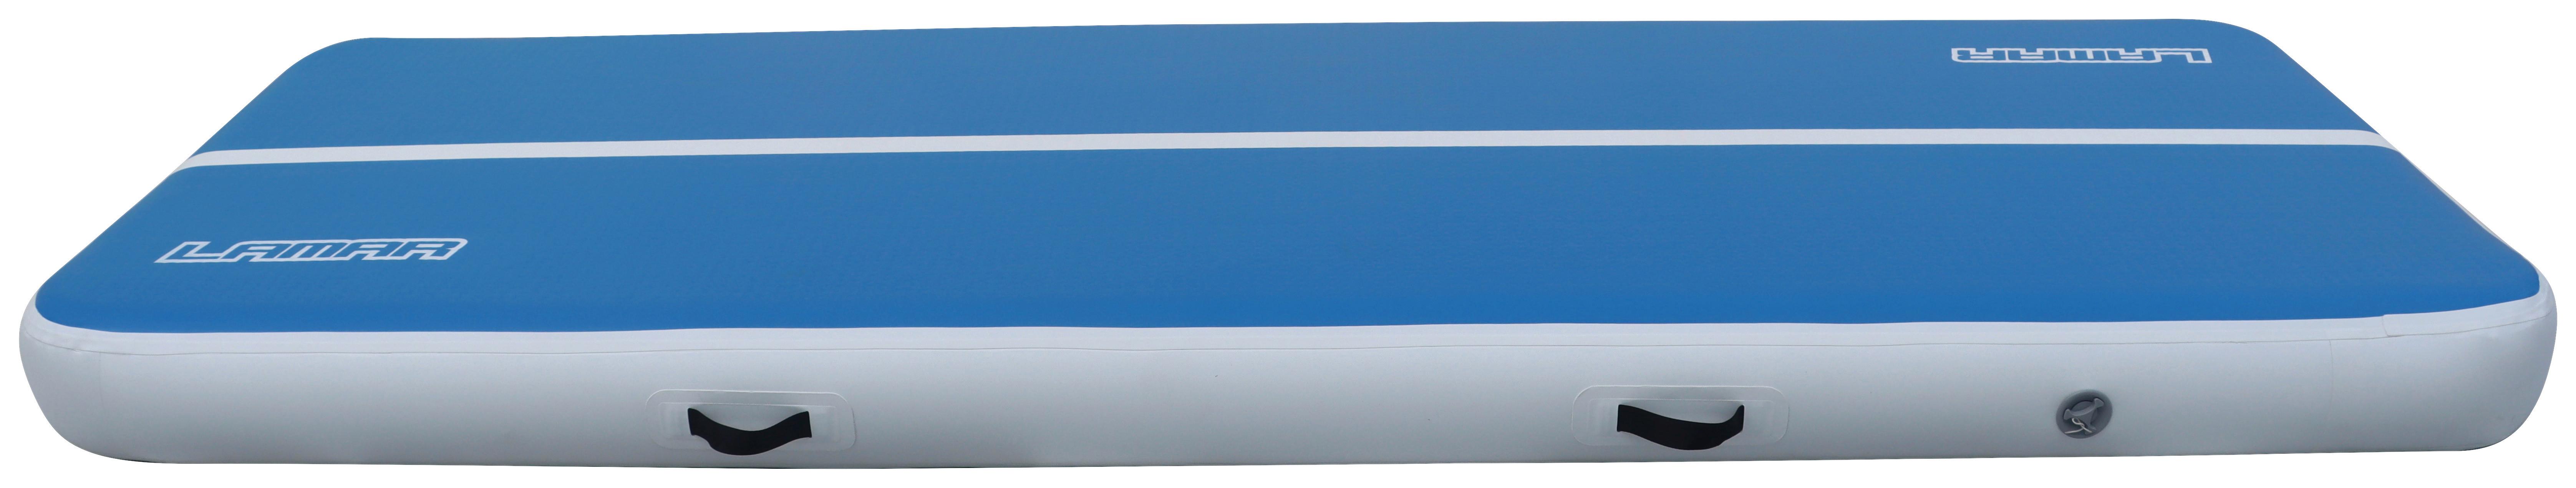 Gymnastikmatte Kunststoff Blau /Weiß Rutschfest 300x100 cm - Blau/Weiß, Basics, Kunststoff (300/100/20cm)